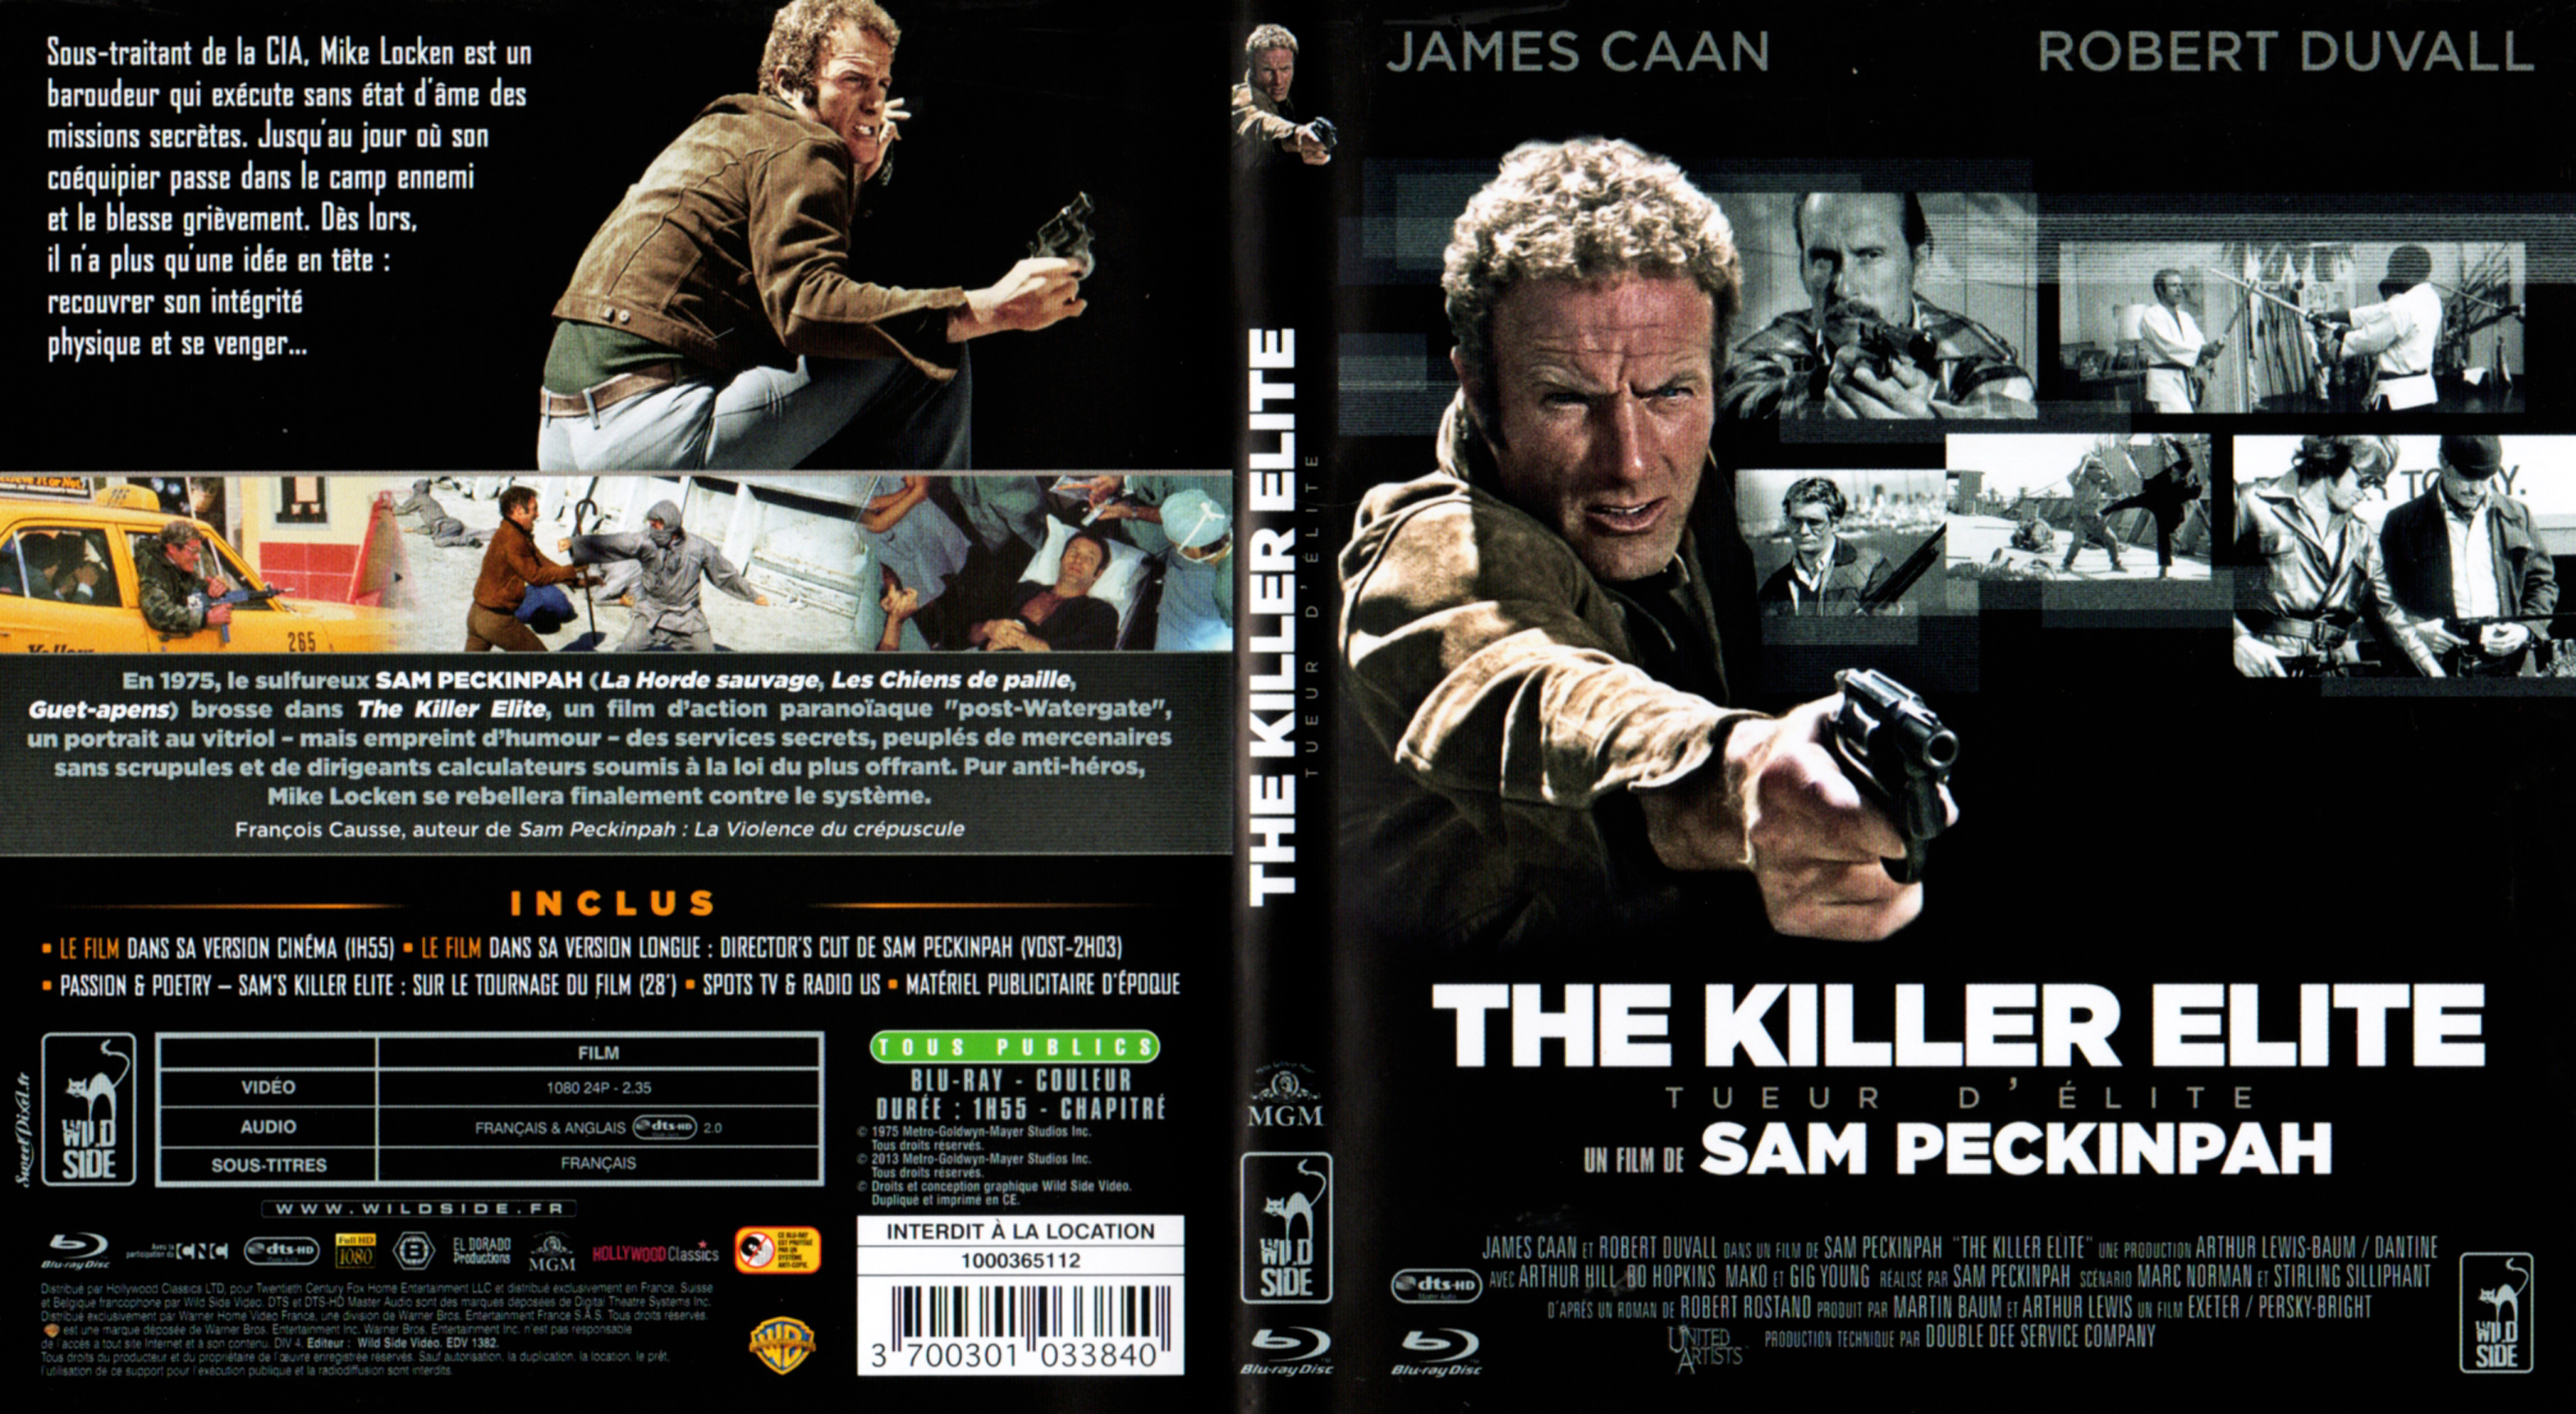 Jaquette DVD The killer elite - Tueur d